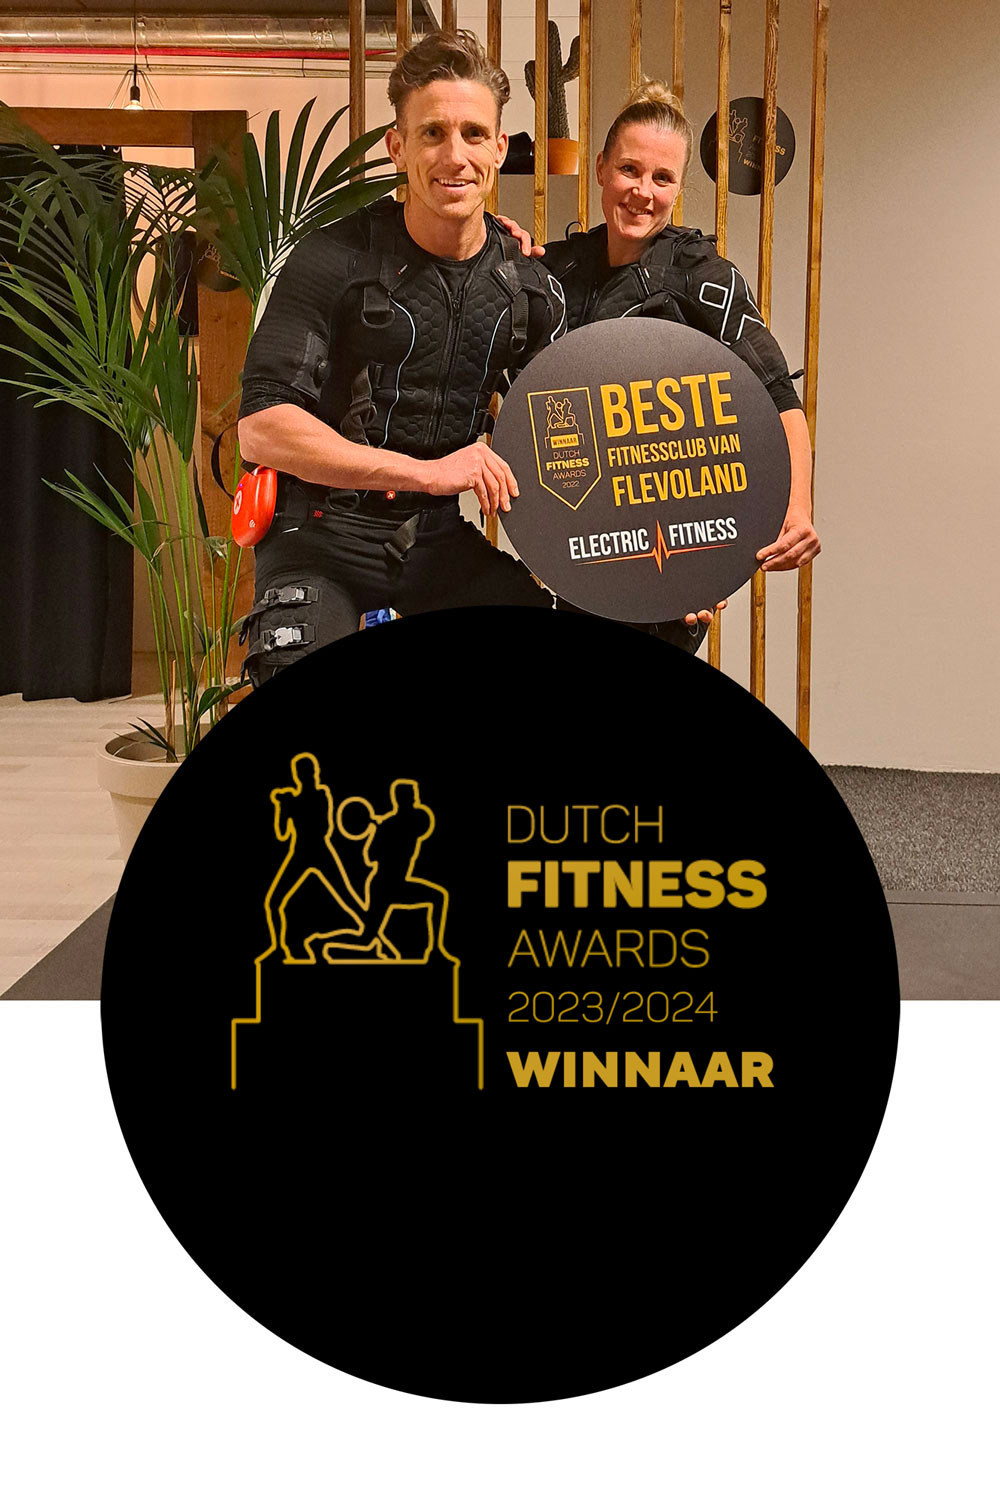 Dutch Fitness Award 2023/2024